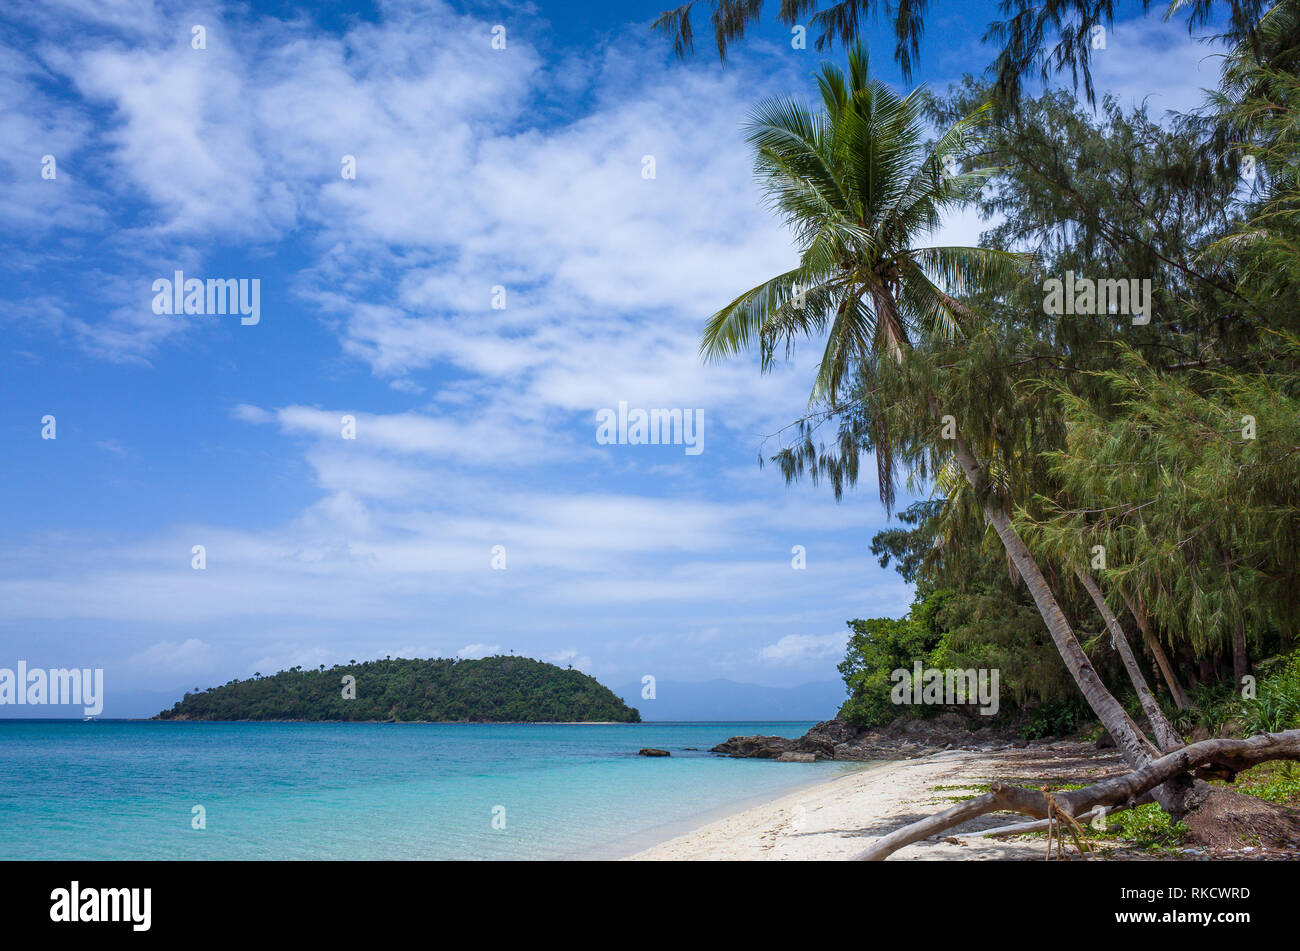 Petite île parfaite dans une mer turquoise, de palmiers et de bonbon, robuste Plage notamment - Philippines Banque D'Images